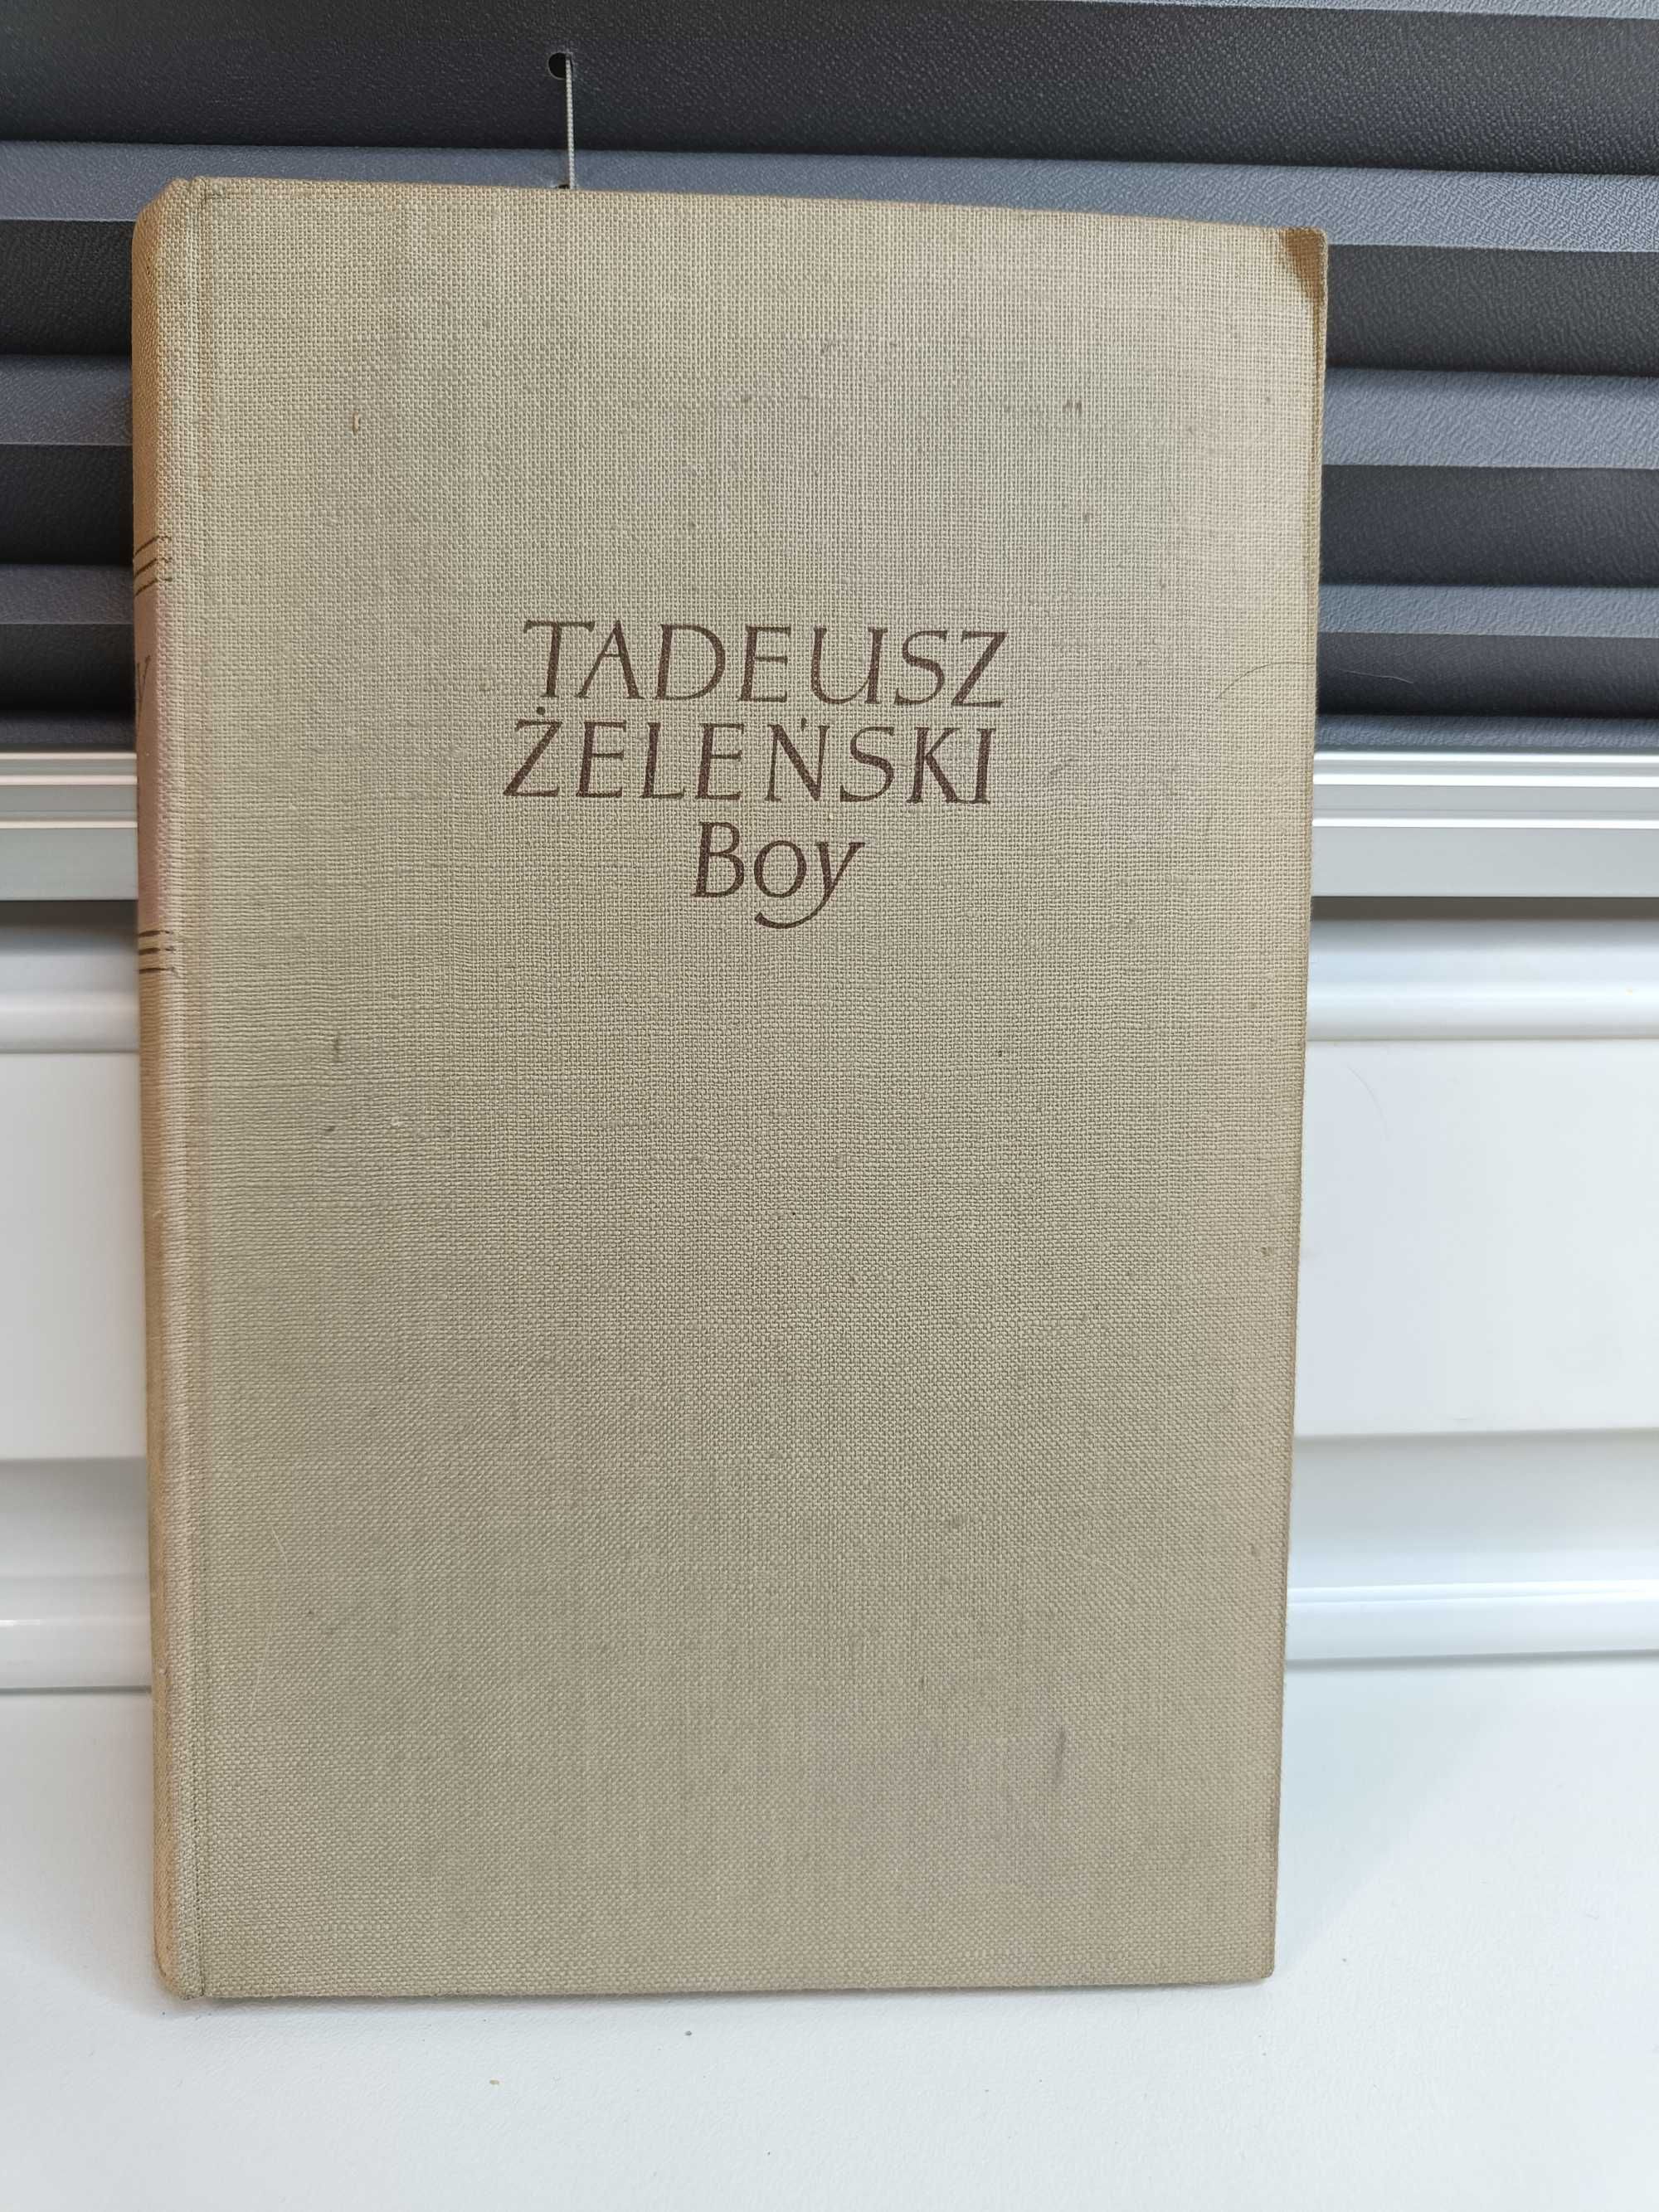 Tadeusz Żeleński (Boy) "Mózg i płeć, cz 2", tom IX Pism